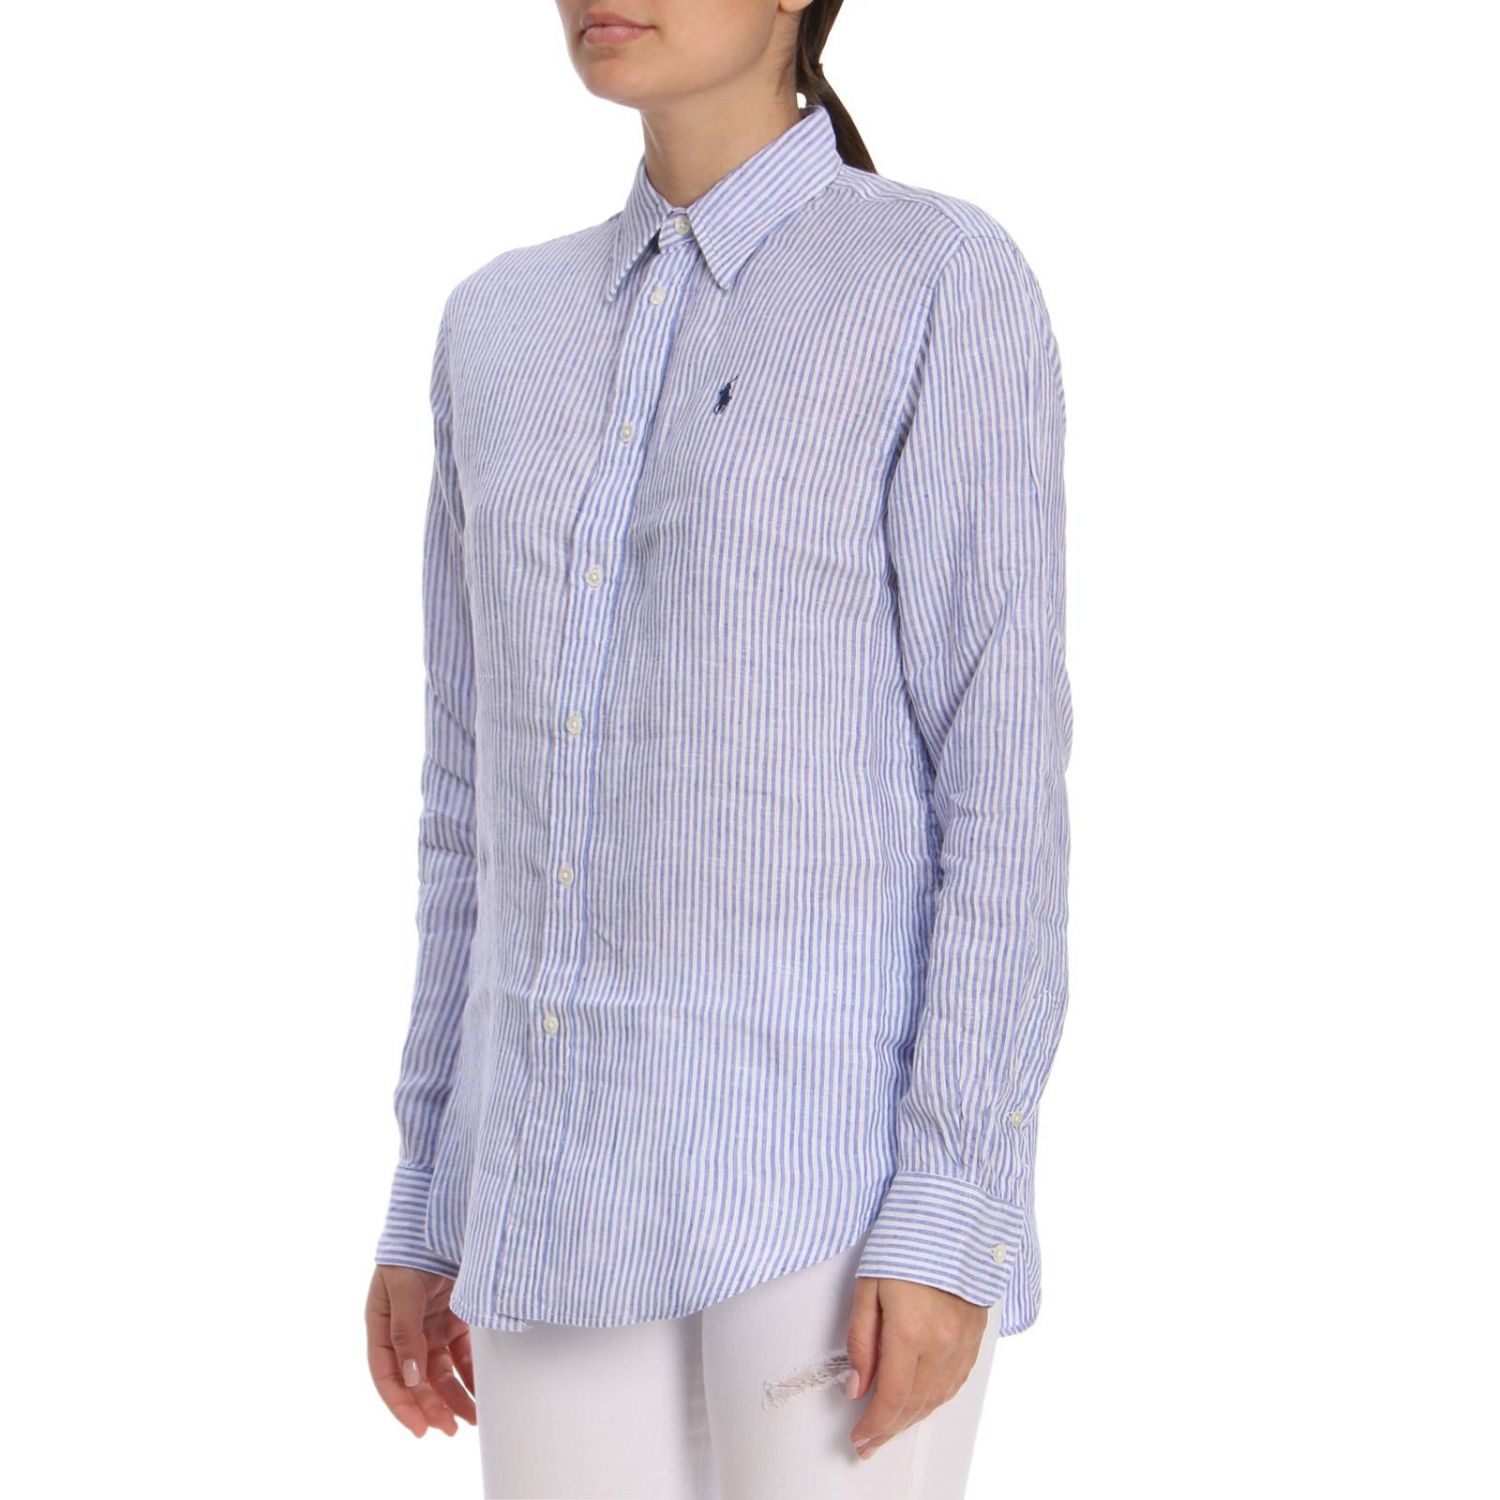 Polo Ralph Lauren Outlet: Shirt women - Blue | Shirt Polo Ralph Lauren ...